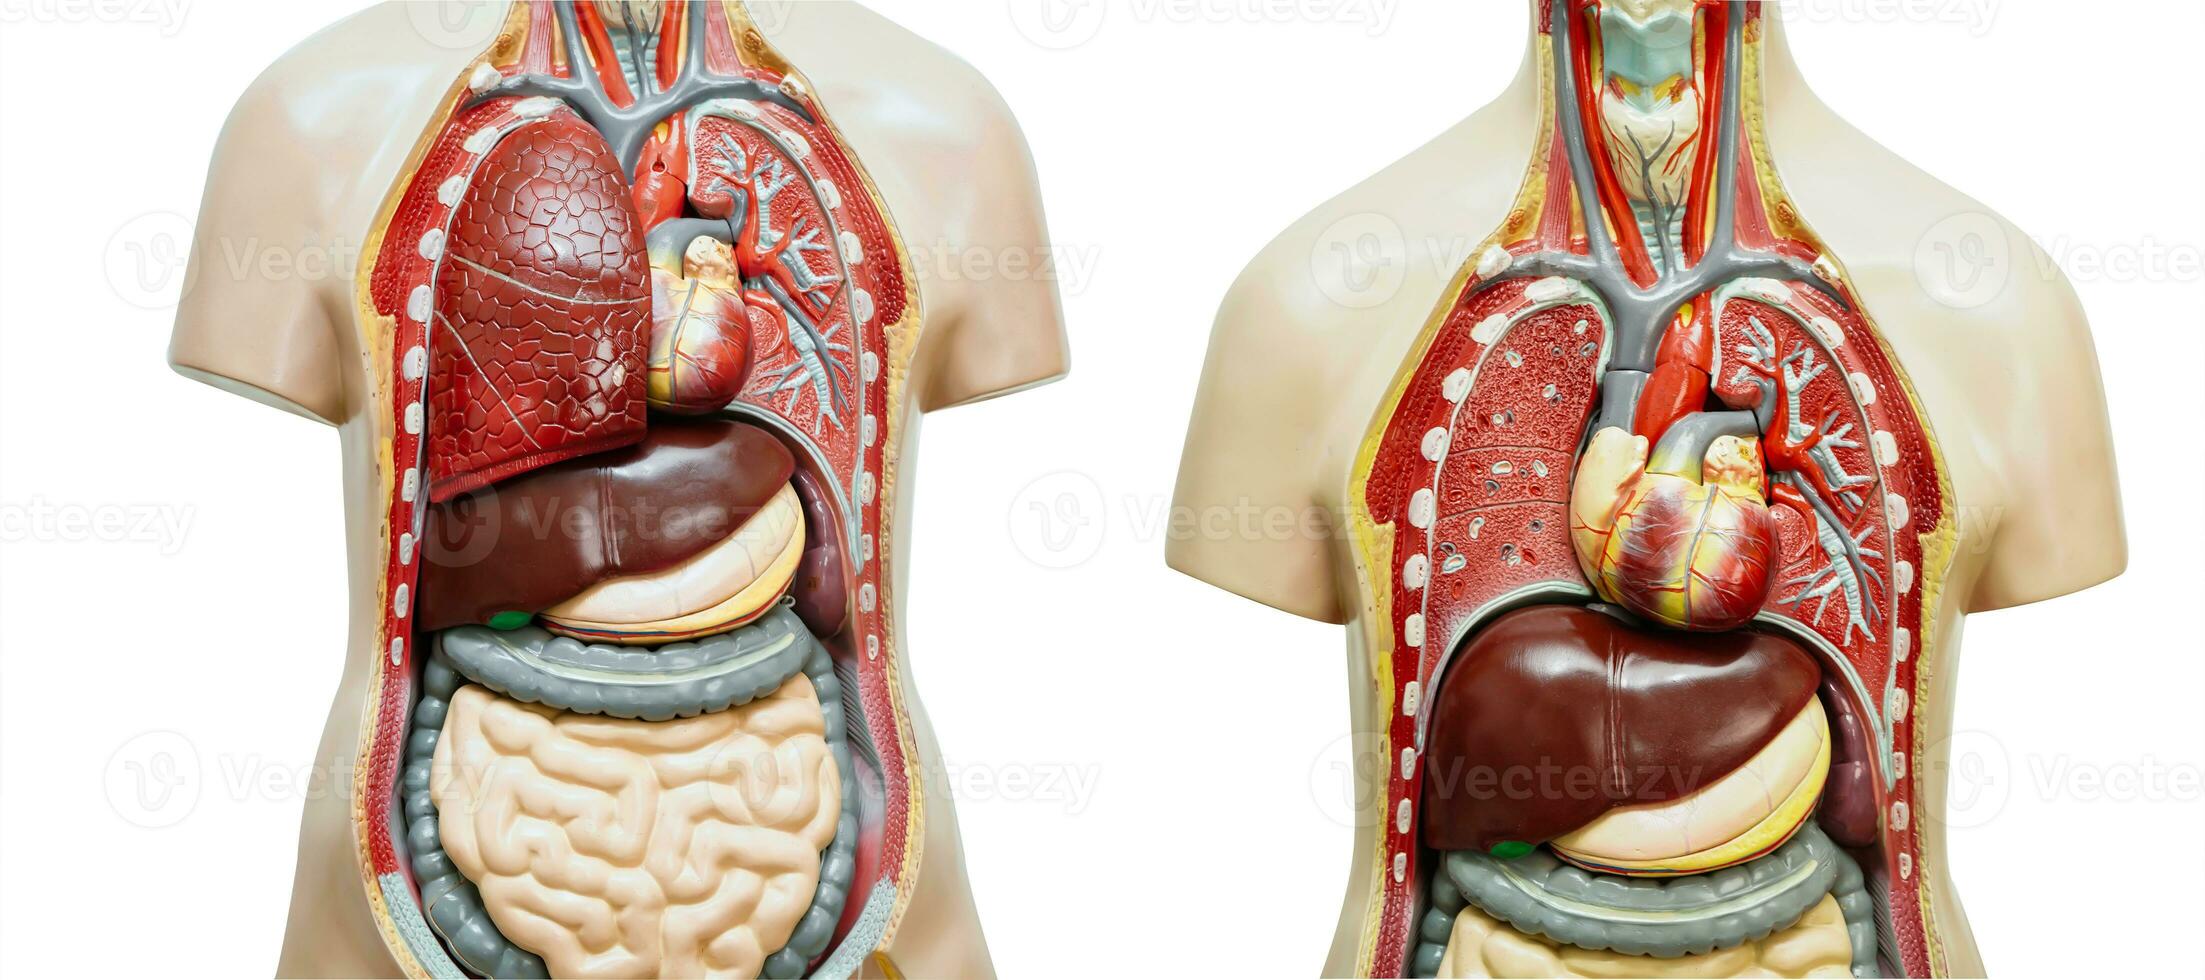 humano cuerpo anatomía Organo modelo aislado en blanco antecedentes para estudiar educación médico curso. foto